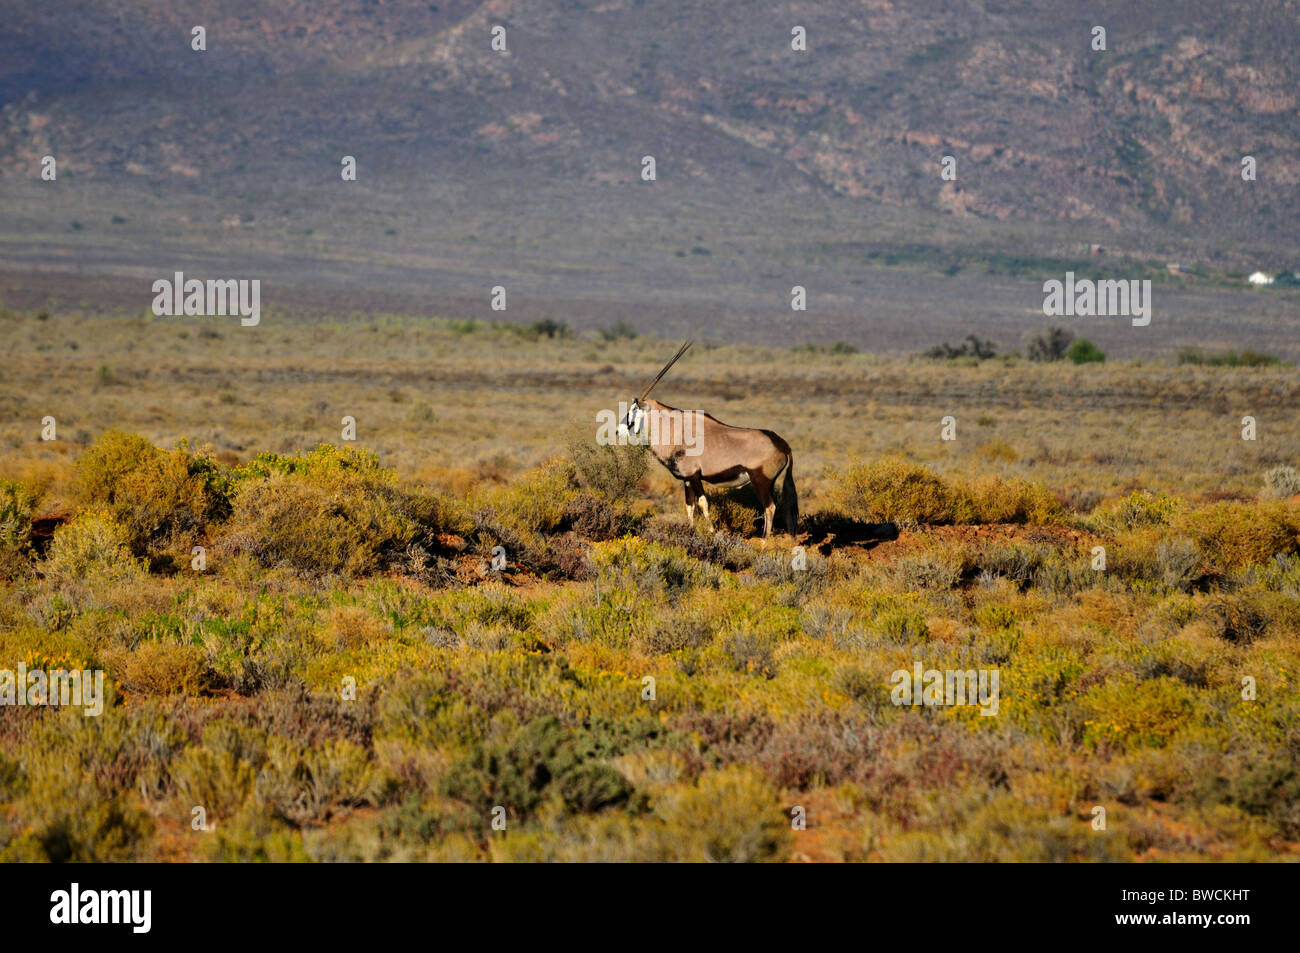 Une famille gemsbok (Oryx gazella) Comité permanent dans les buissons. L'Afrique du Sud. Banque D'Images